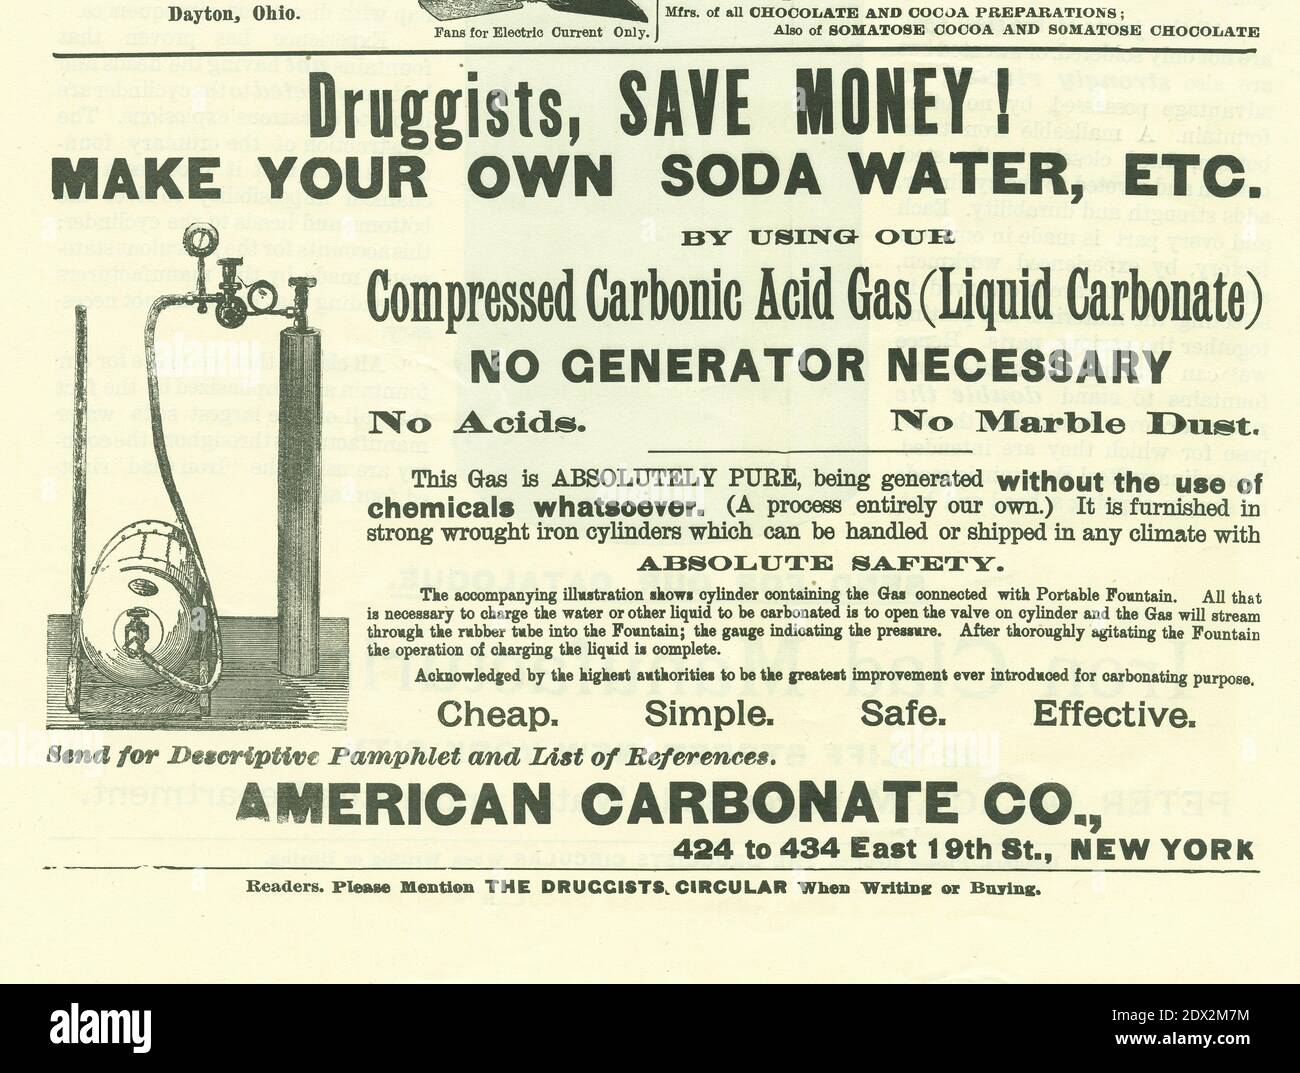 Antique June 1896 anuncio de American Carbonate Co de Nueva York para el puro “gas ácido carbónico comprimido (Carbonato líquido)” en la Circular de los Drugistas y la Gaceta Química. FUENTE: ANUNCIO ORIGINAL Foto de stock